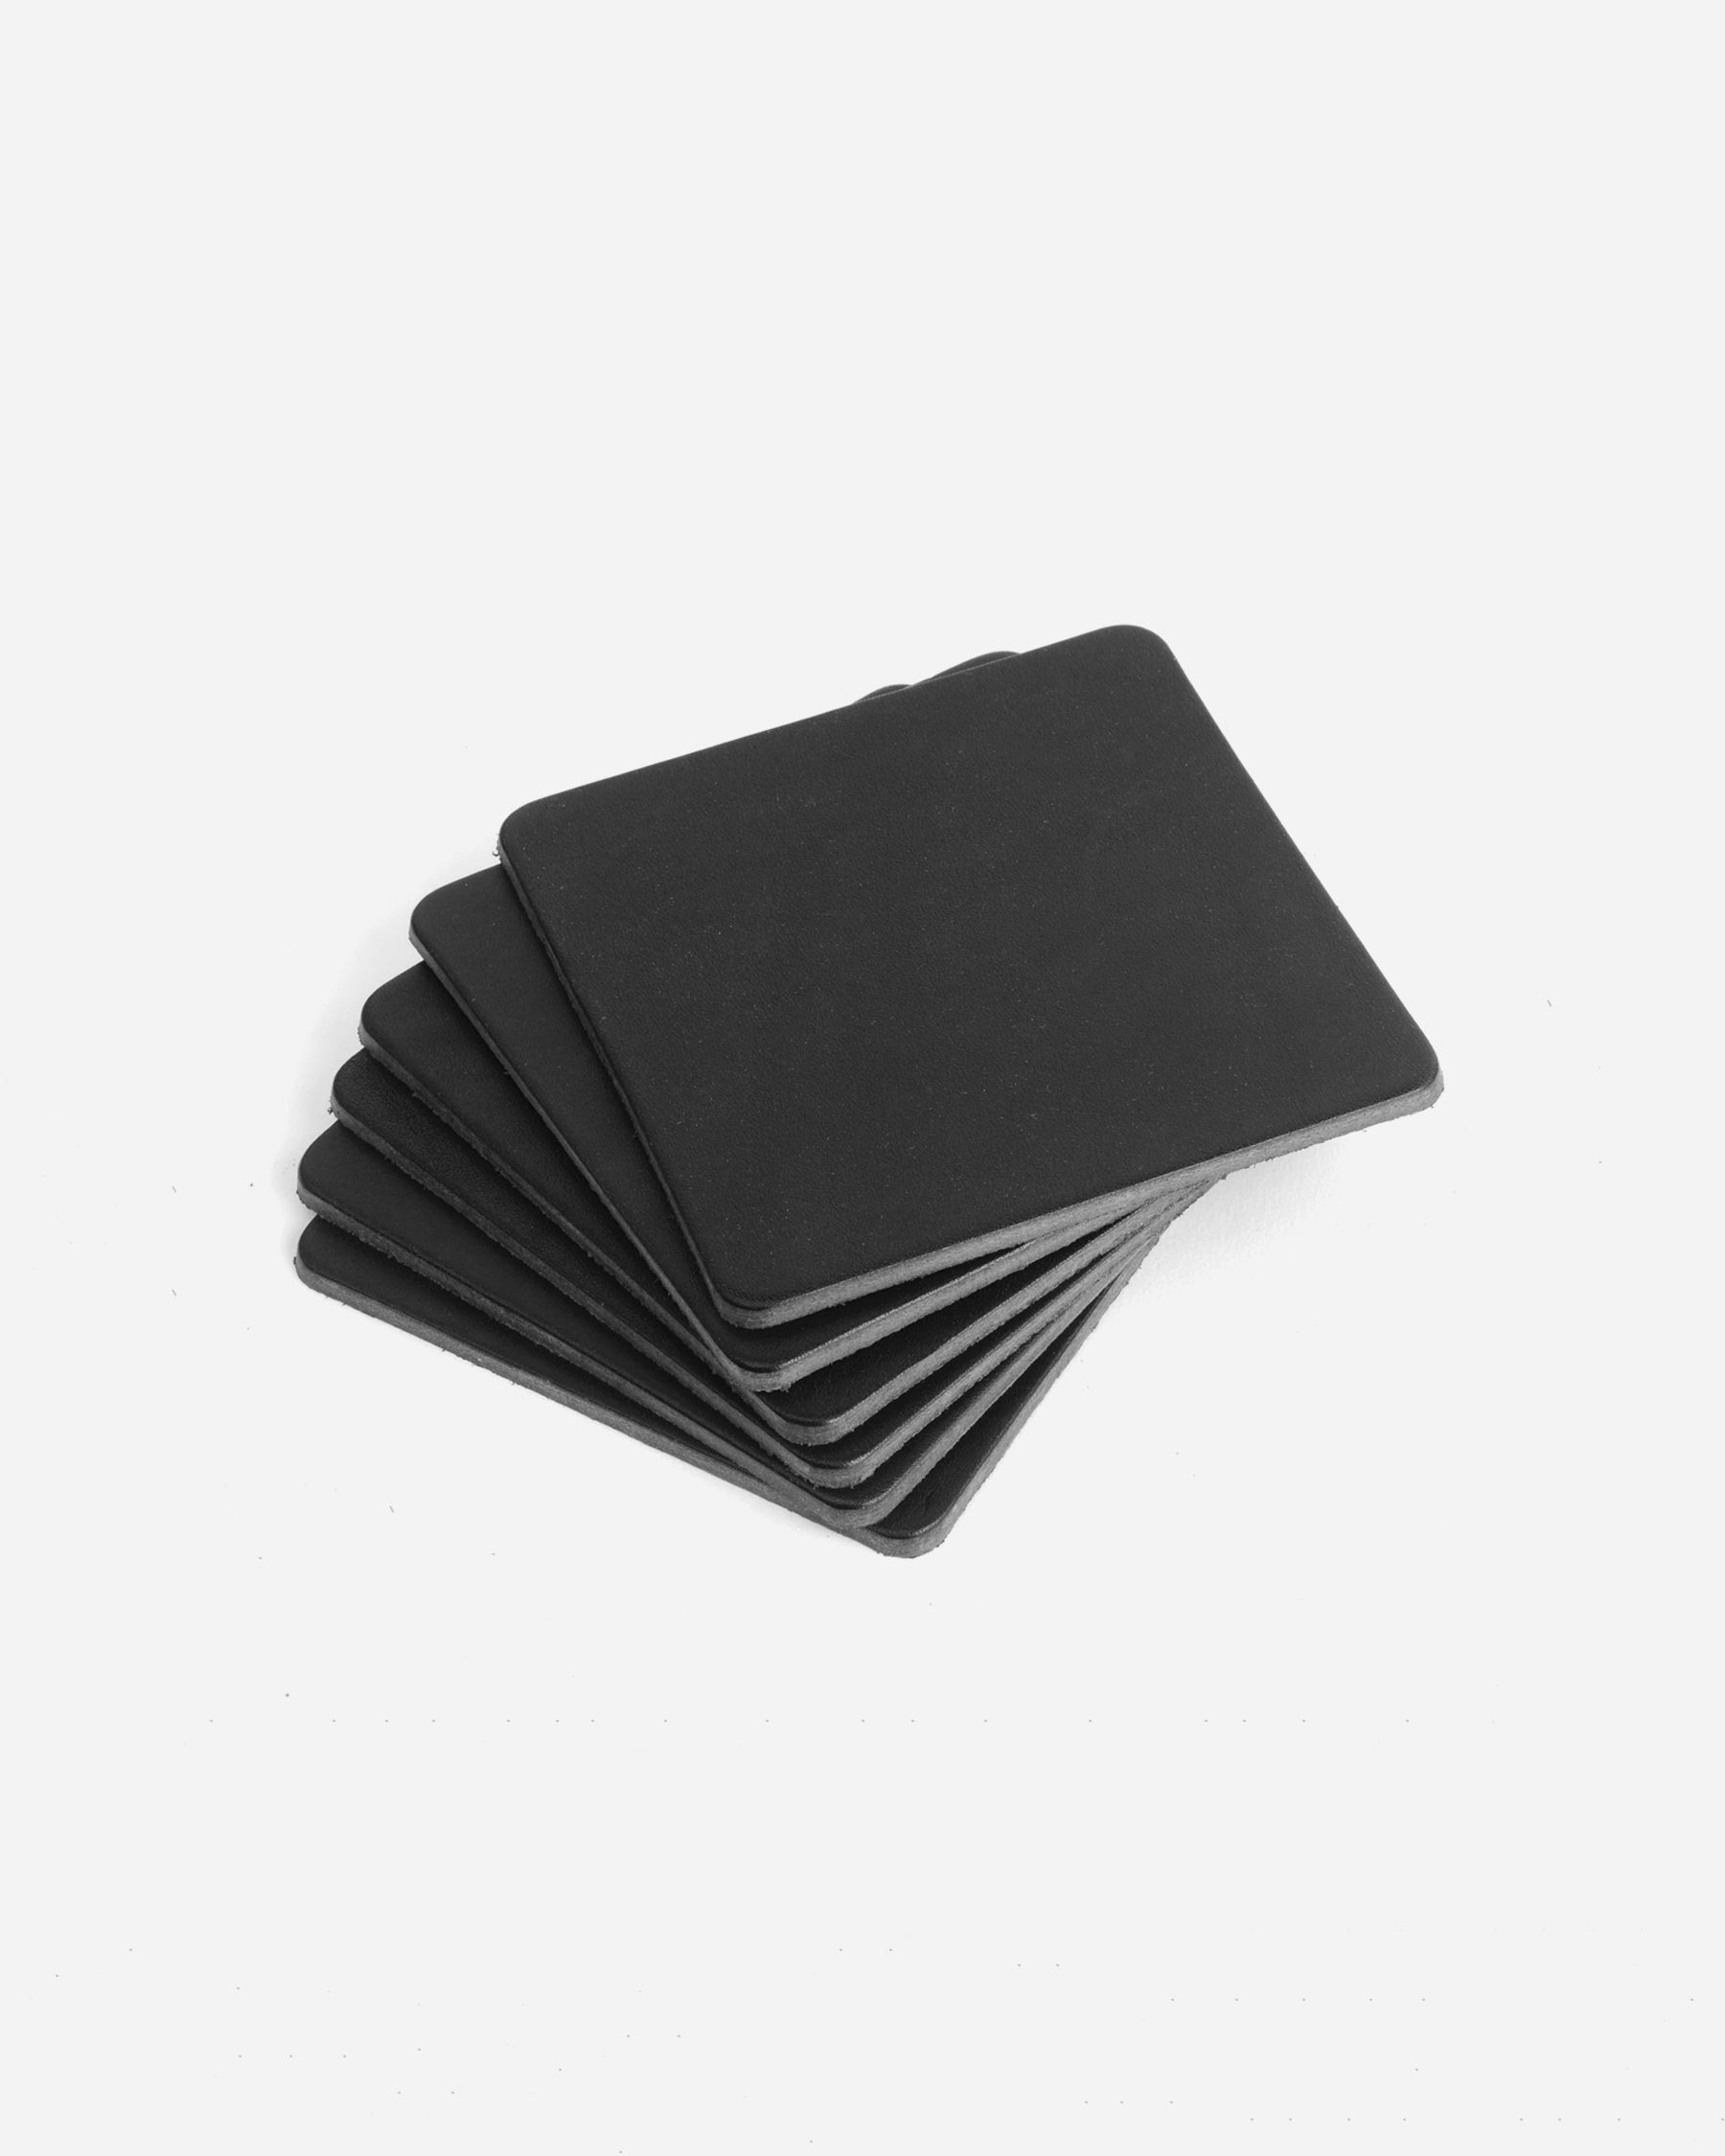 Black Veg Tan Leather Coasters - Square